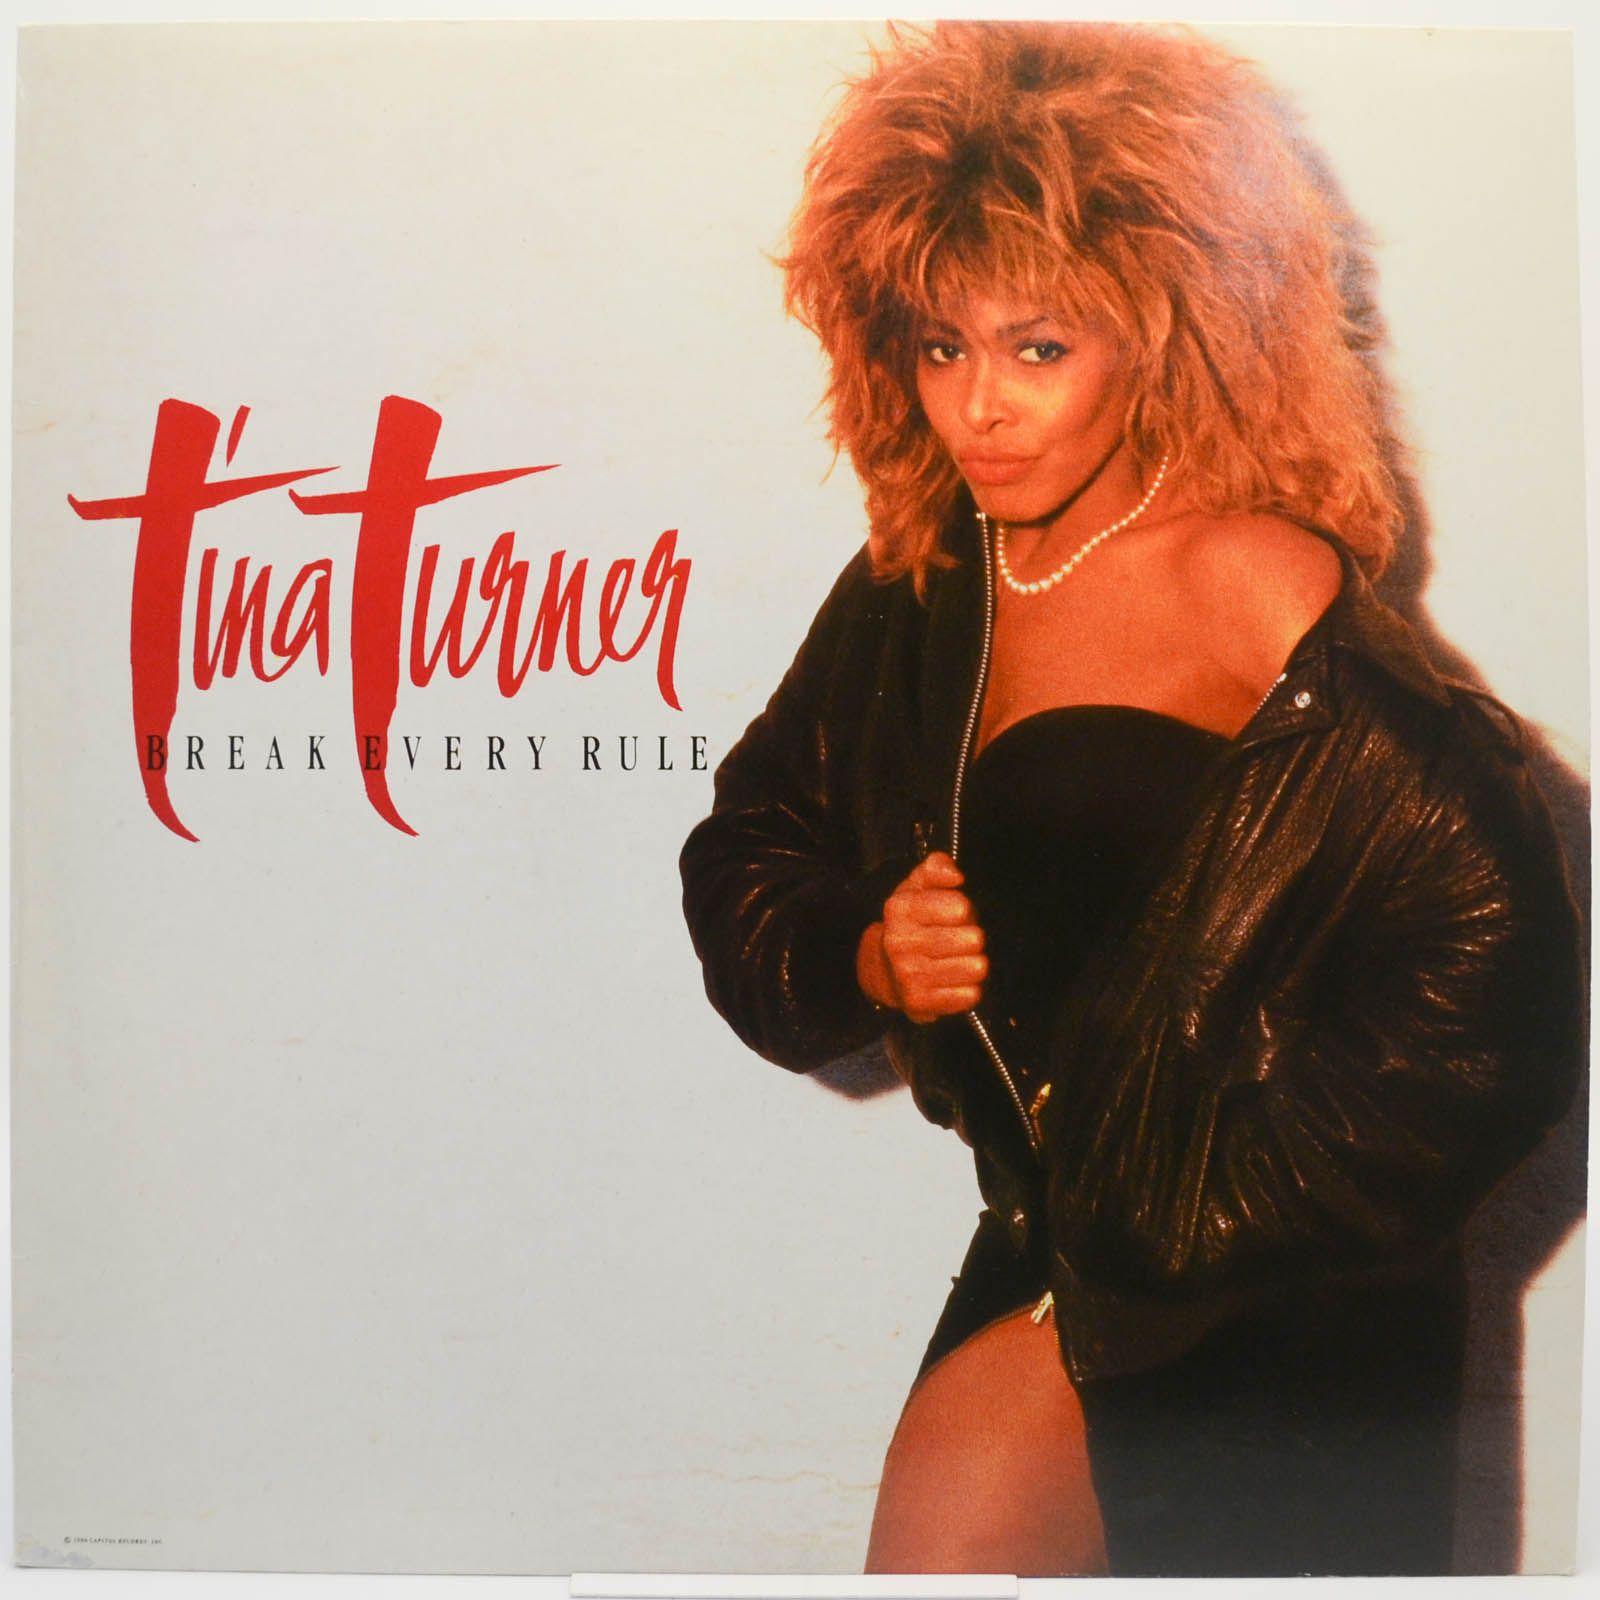 Tina Turner — Break Every Rule, 1986